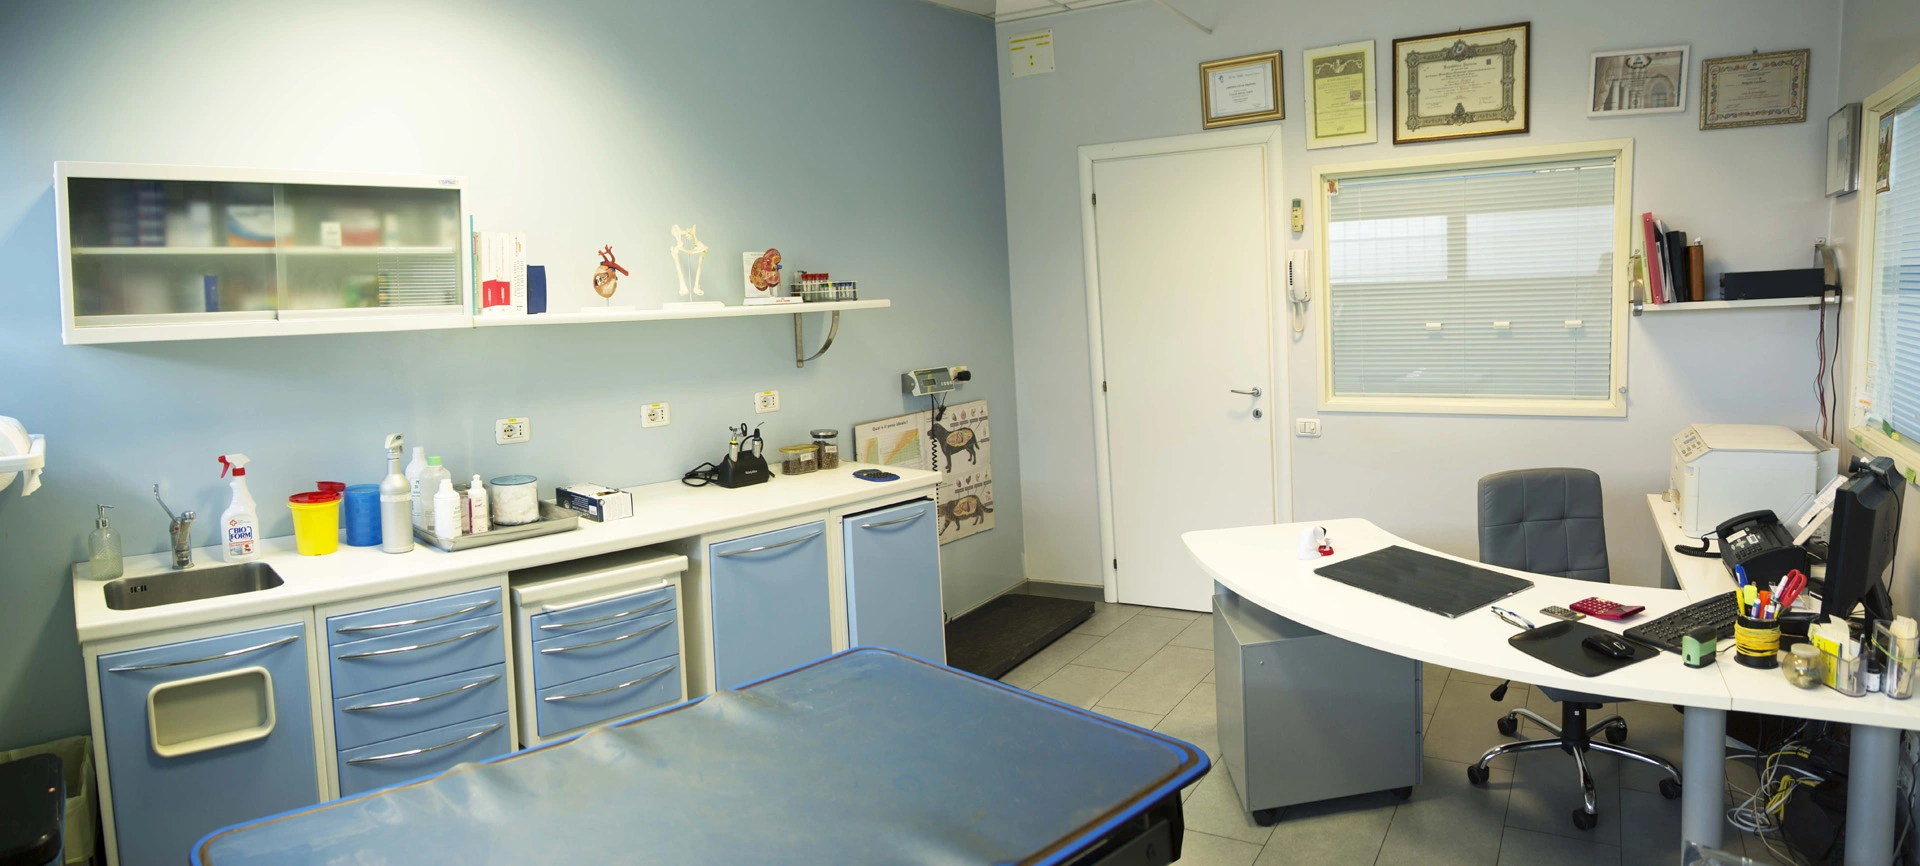 clinica Veterinaria Reggio Emilia - Soccorsi - Intervento - Cure